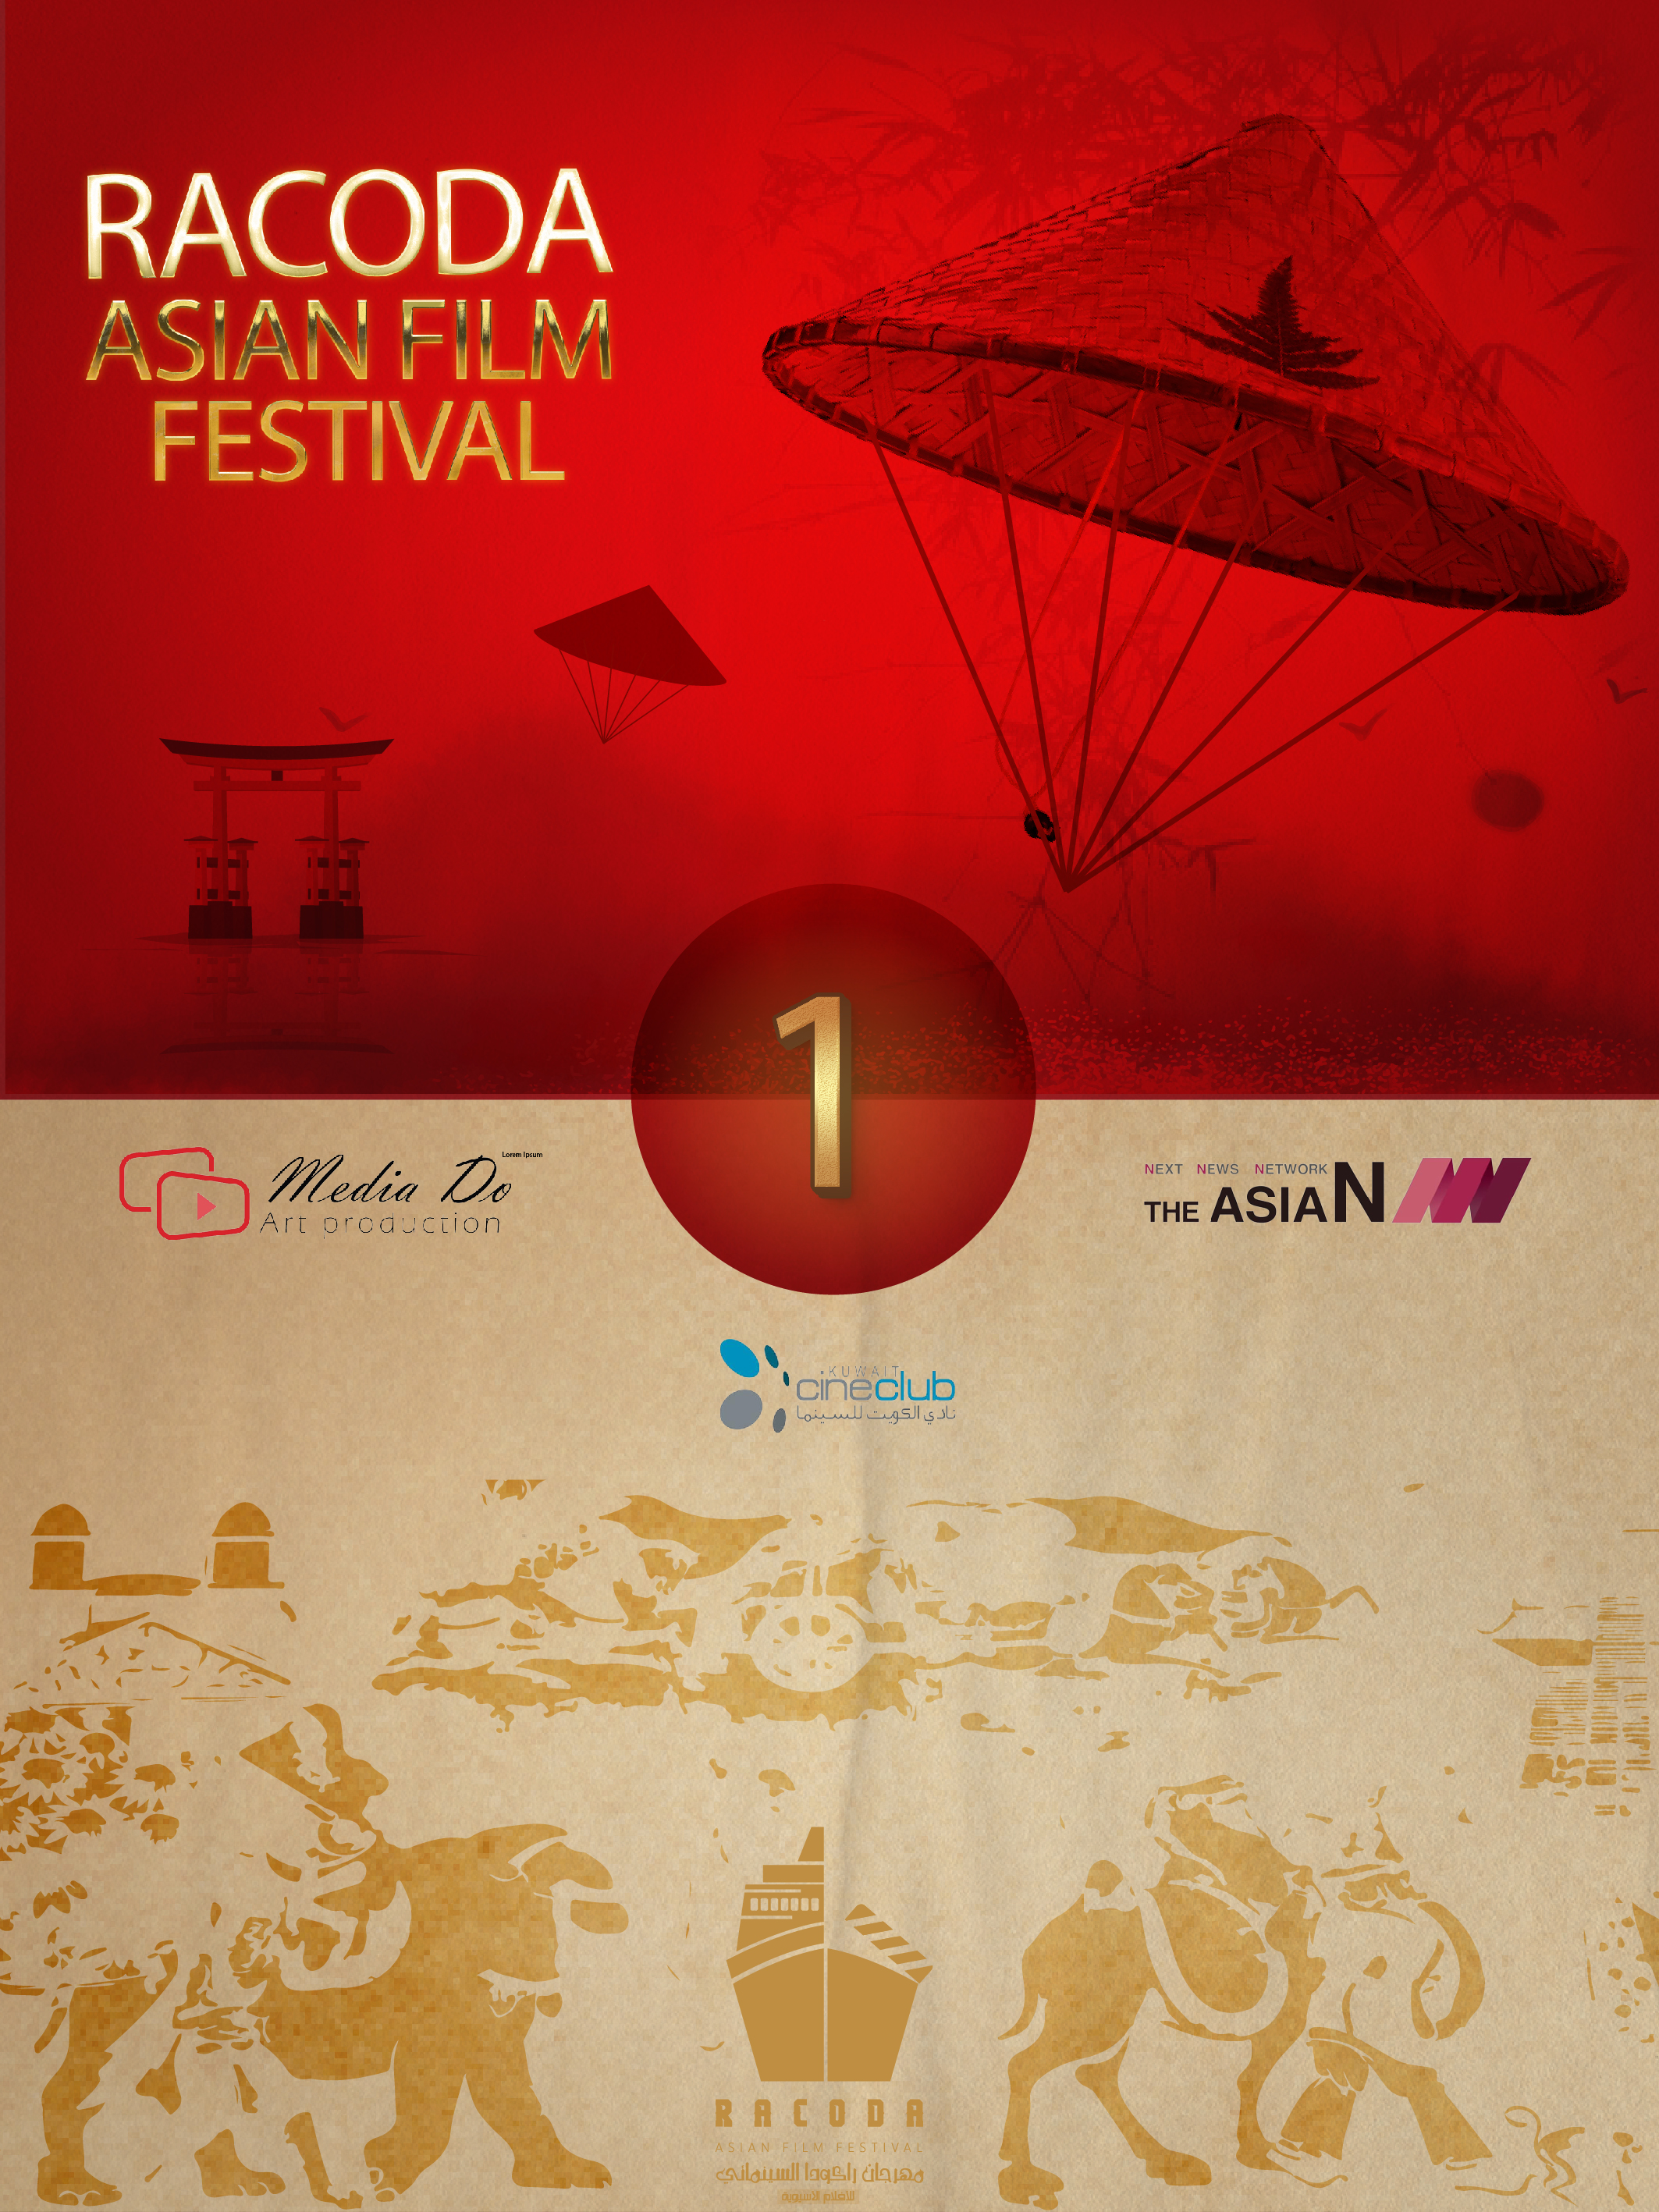 فتح باب استقبال الأفلام المشاركة بمهرجان راكودا للأفلام الآسيوية